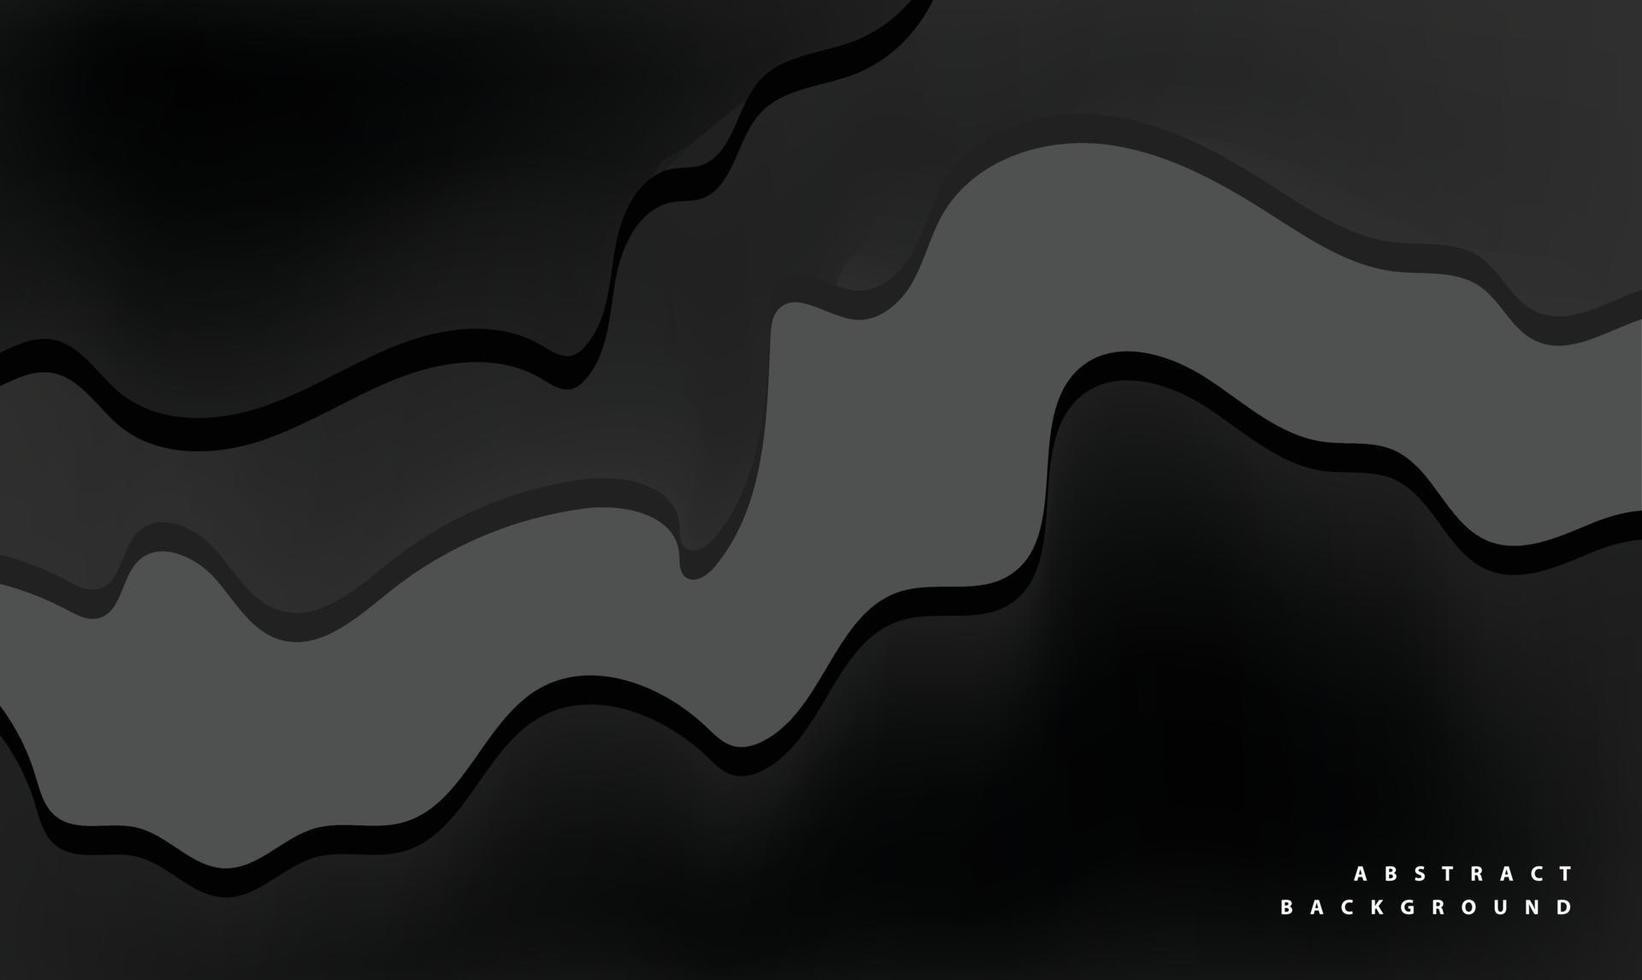 abstrakt schwarz freitag tapete luxus vektor hintergrund vorlage farbe kunst vorlage business dunkel